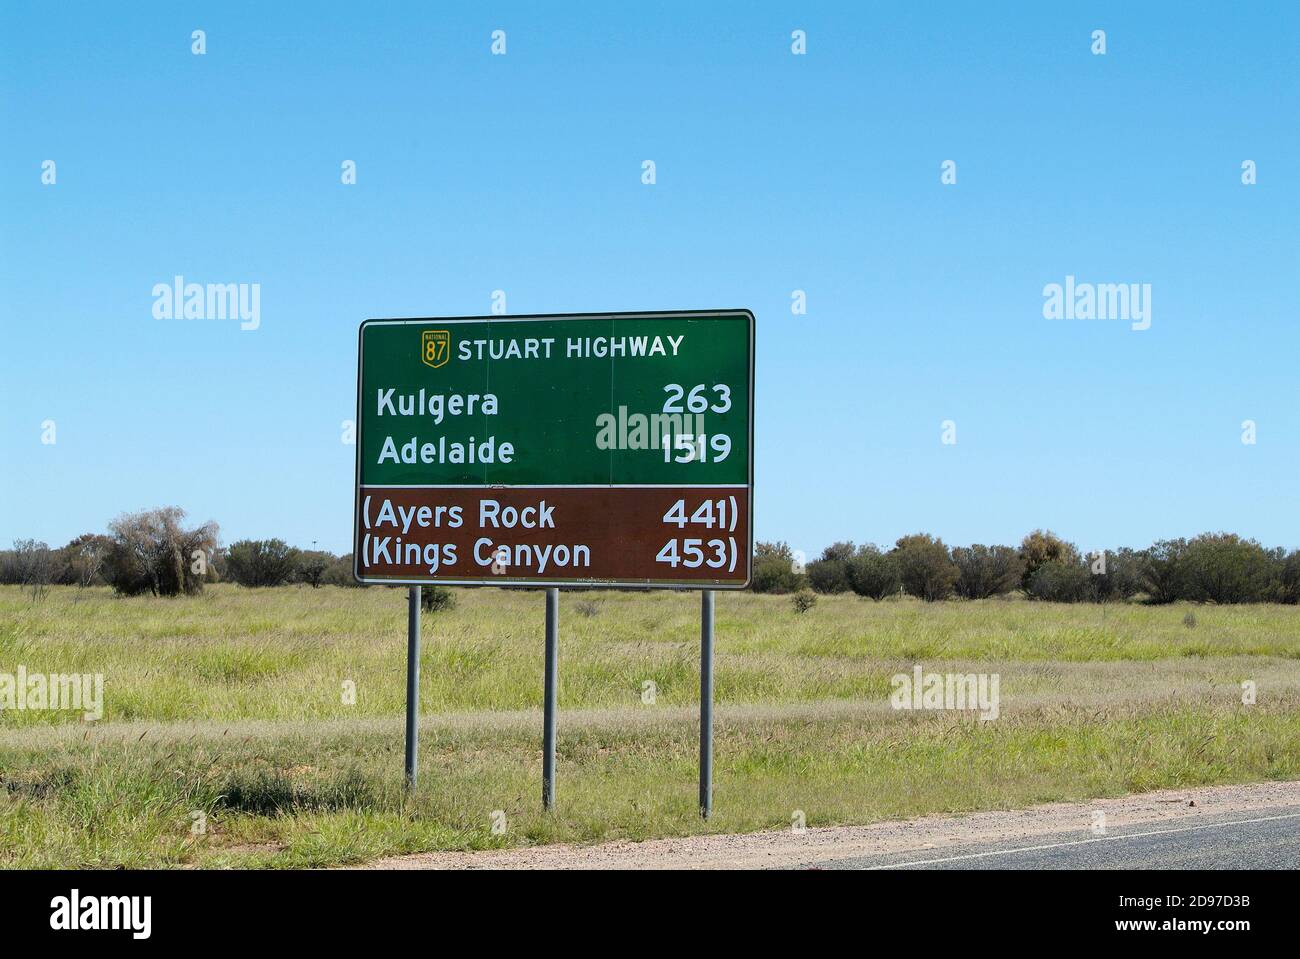 Street sign in Alice Springs, Australia Stock Photo